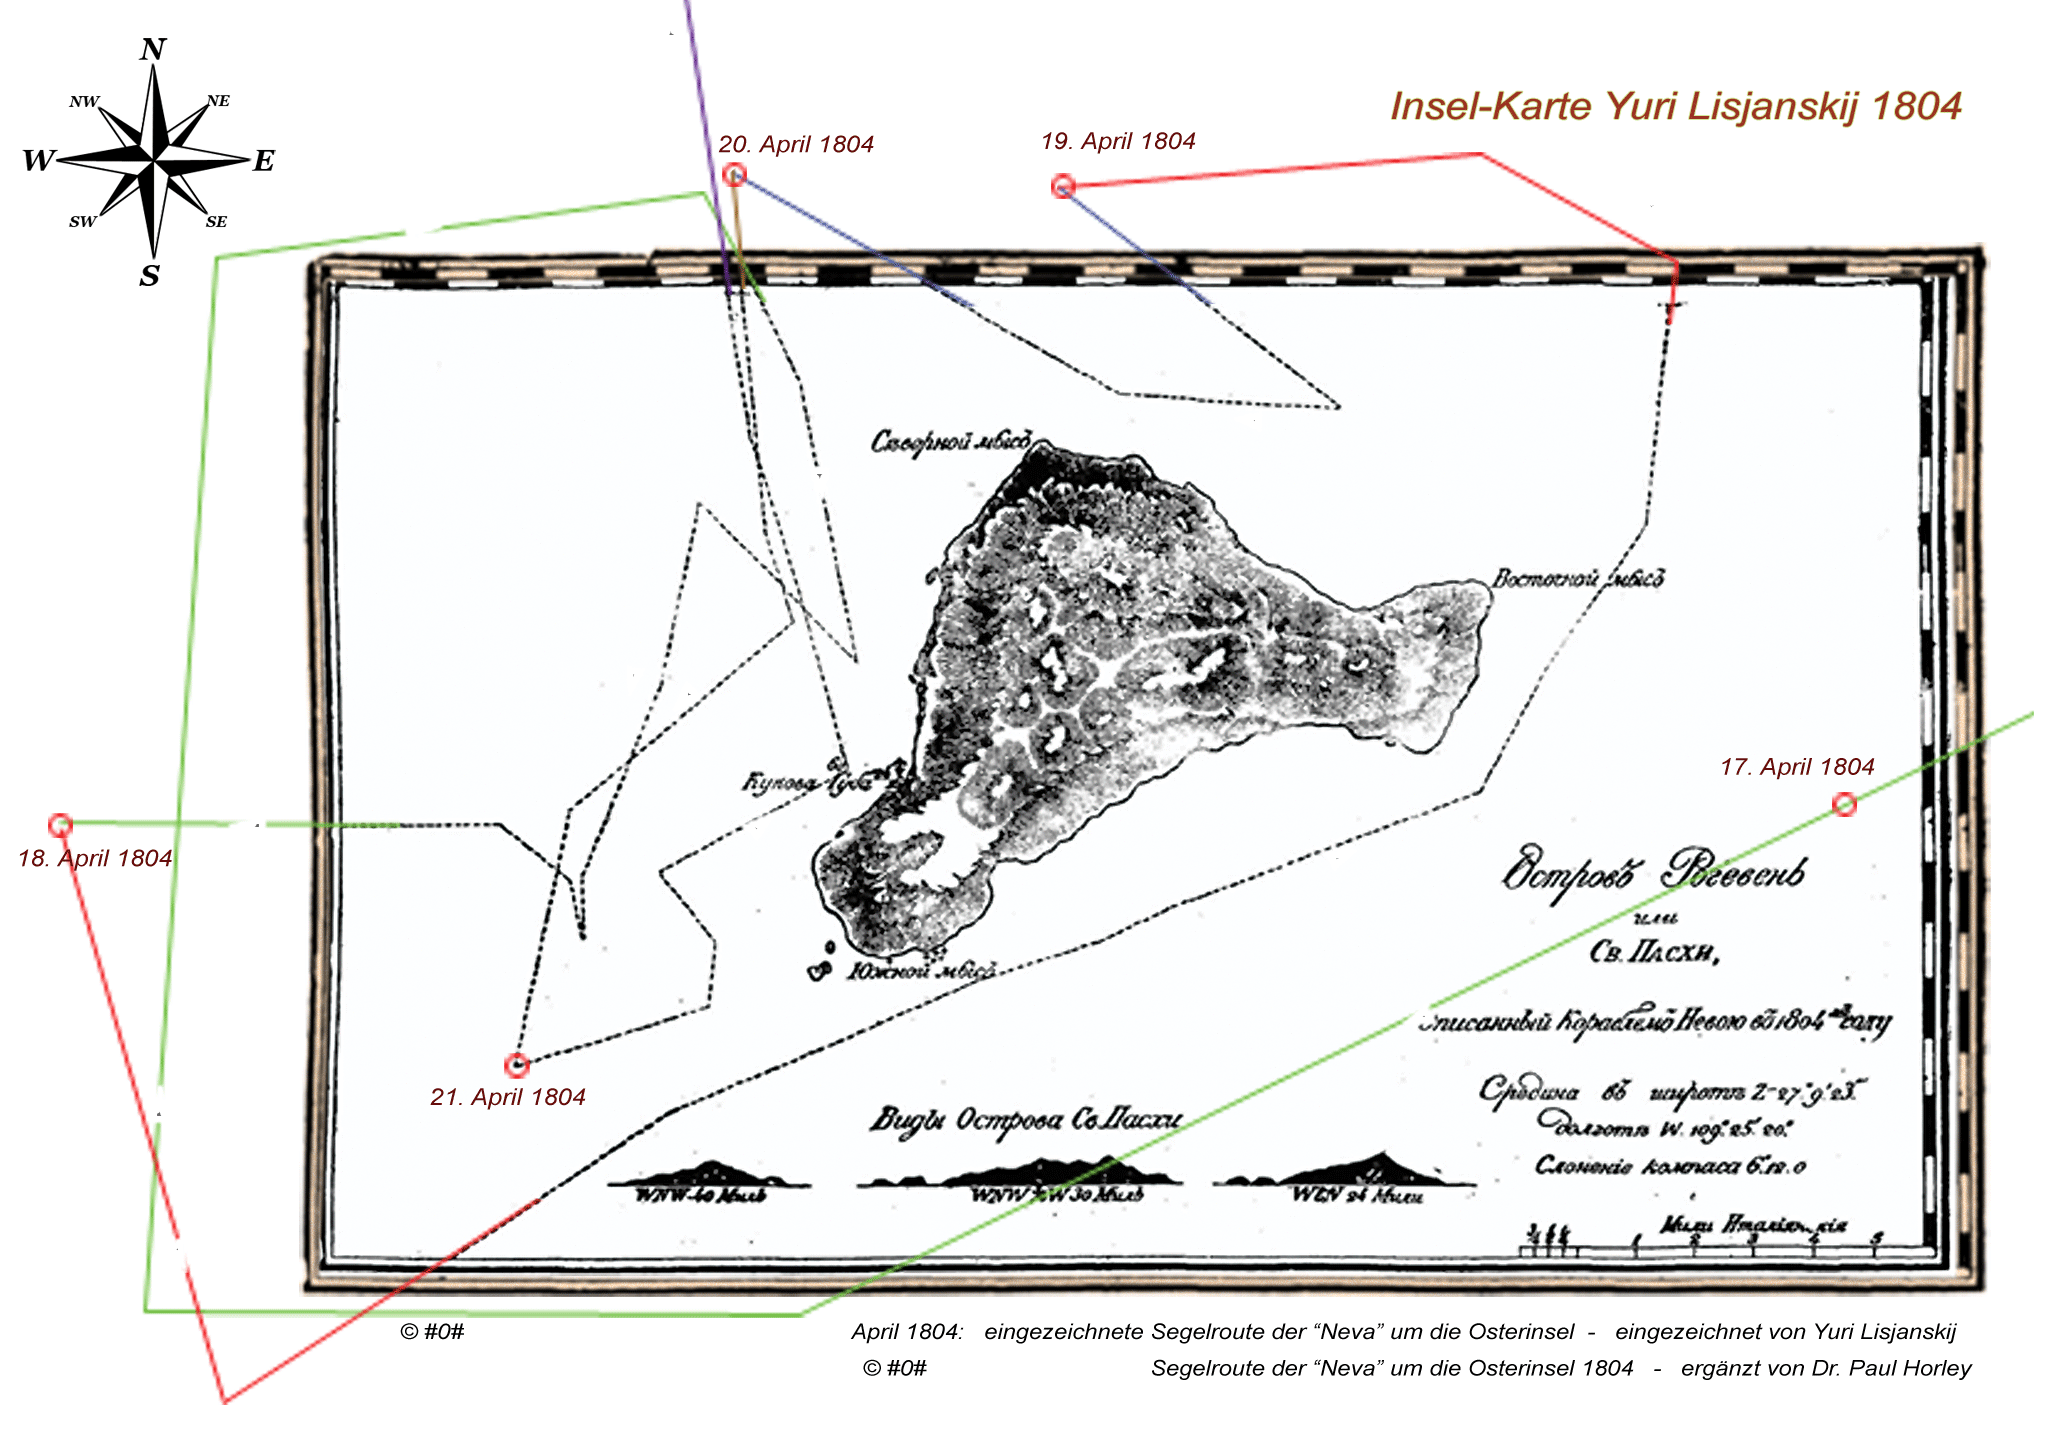 Karte von der Osterinsel aus dem Jahre 1804 von Yuri Lisjanskij